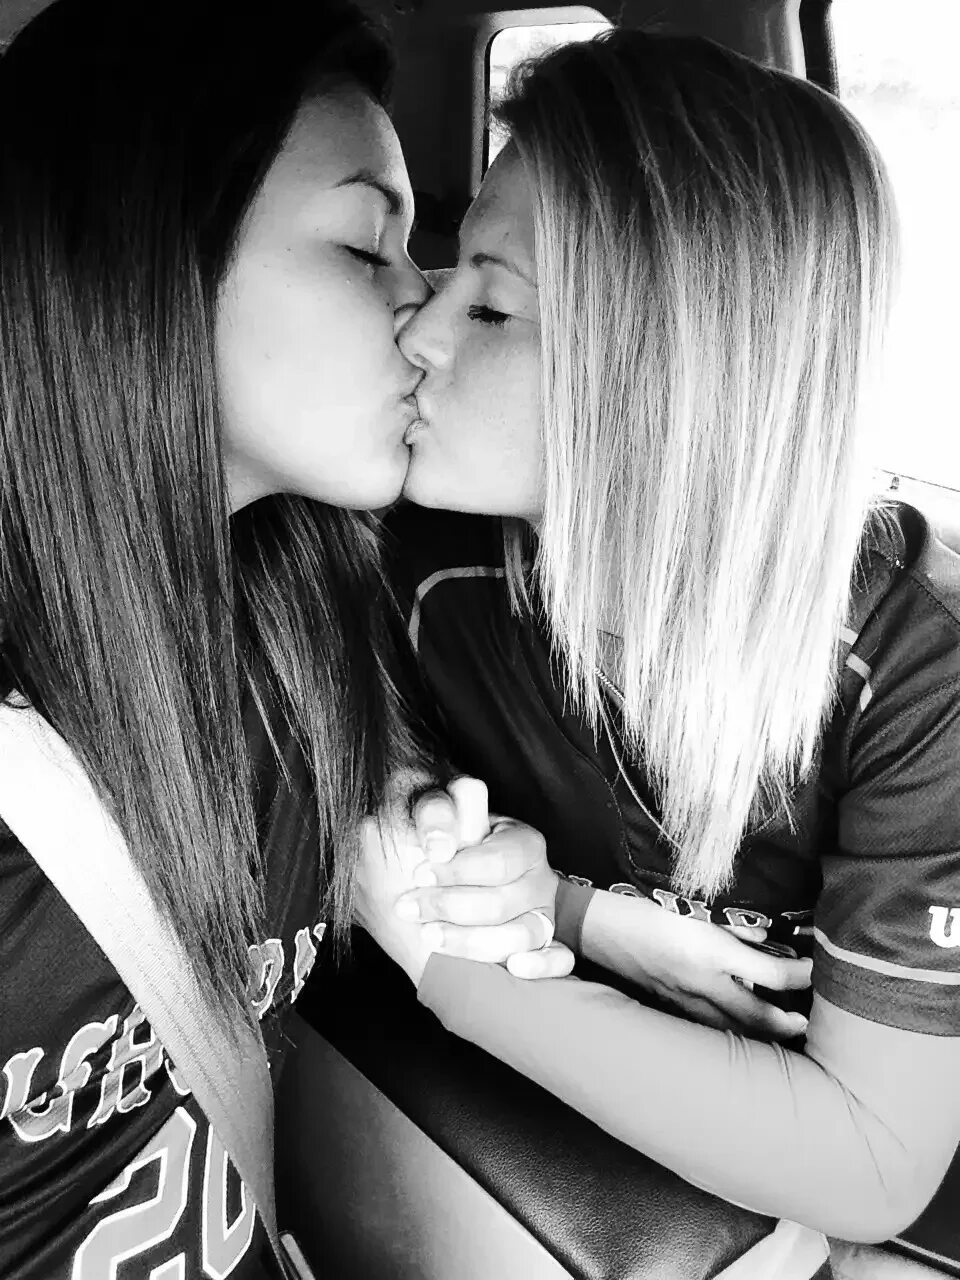 Lesbian 13. Две девушки целуются. Красивый поцелуй девушек. Поцелуй девушки с девушкой. Подруги.